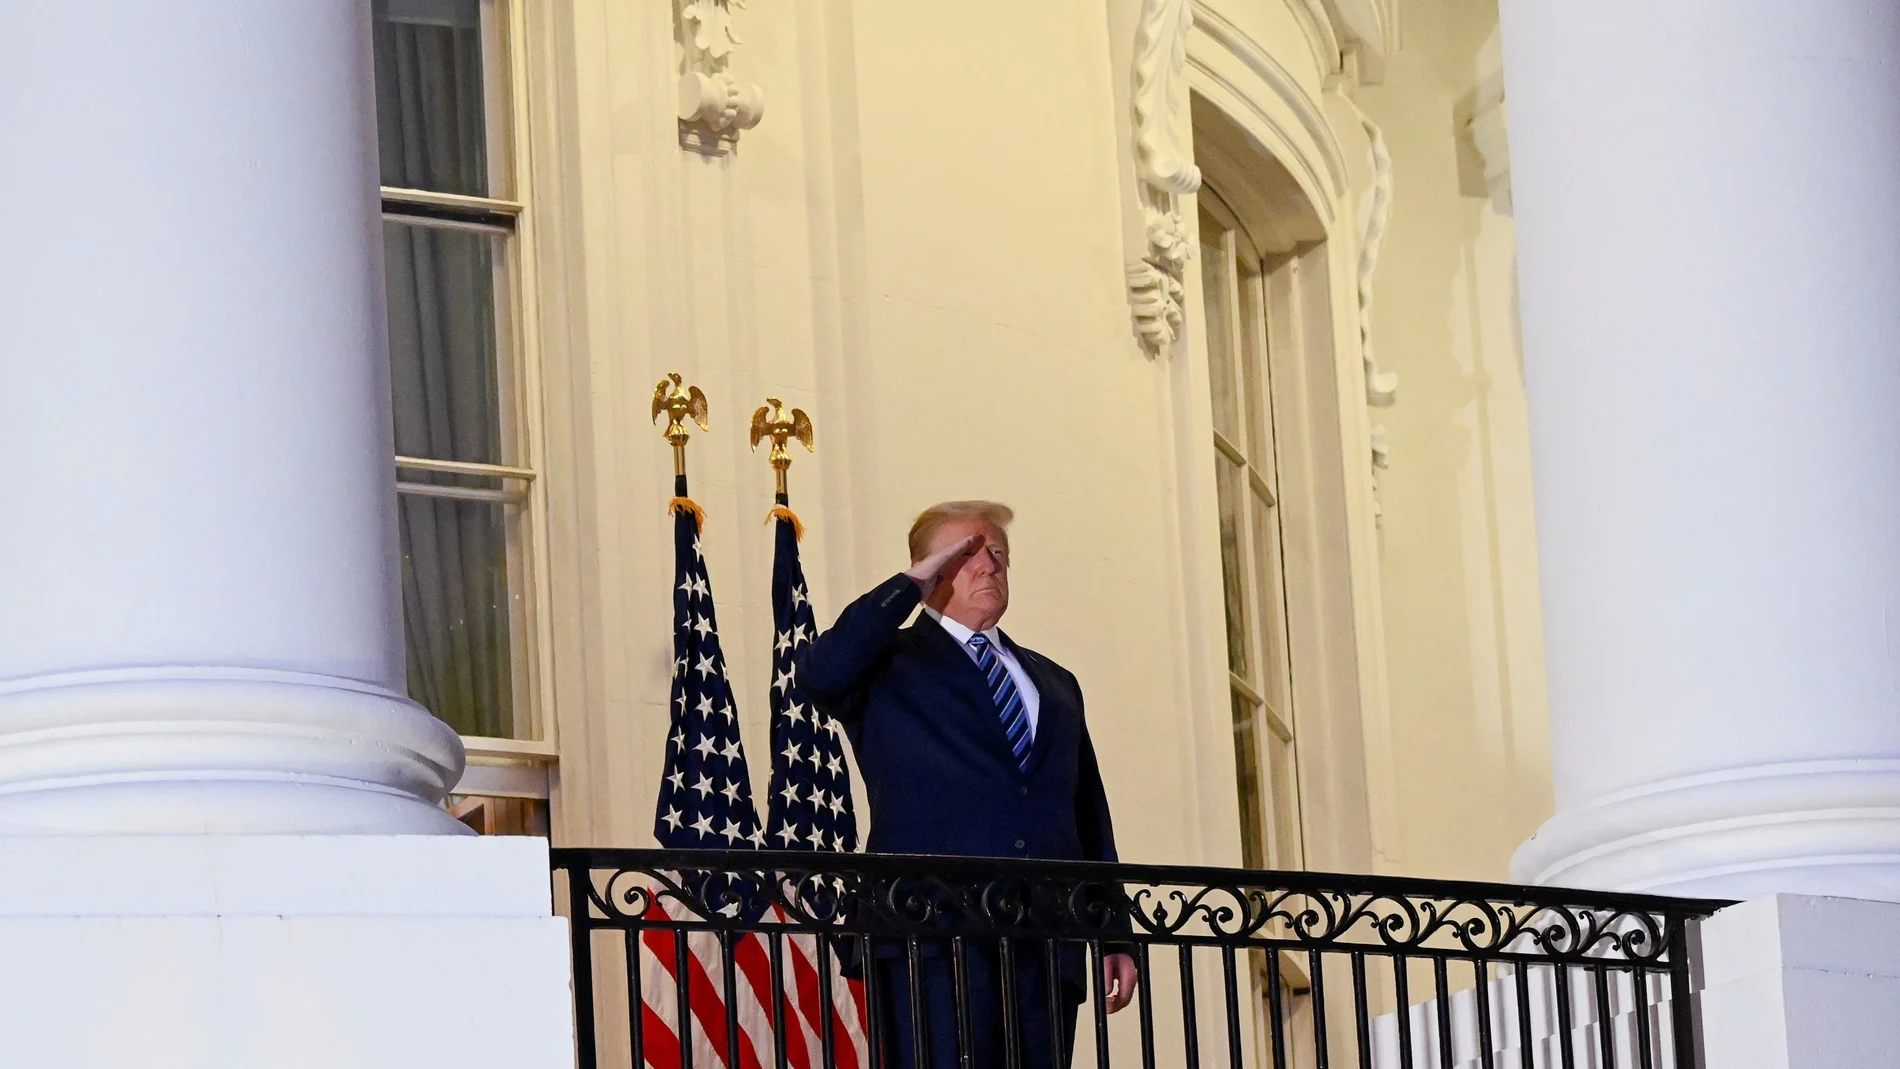 El presidente Donald Trump saluda a su vuelta a la Casa Blanca tras tres días de ingreso en el hospital